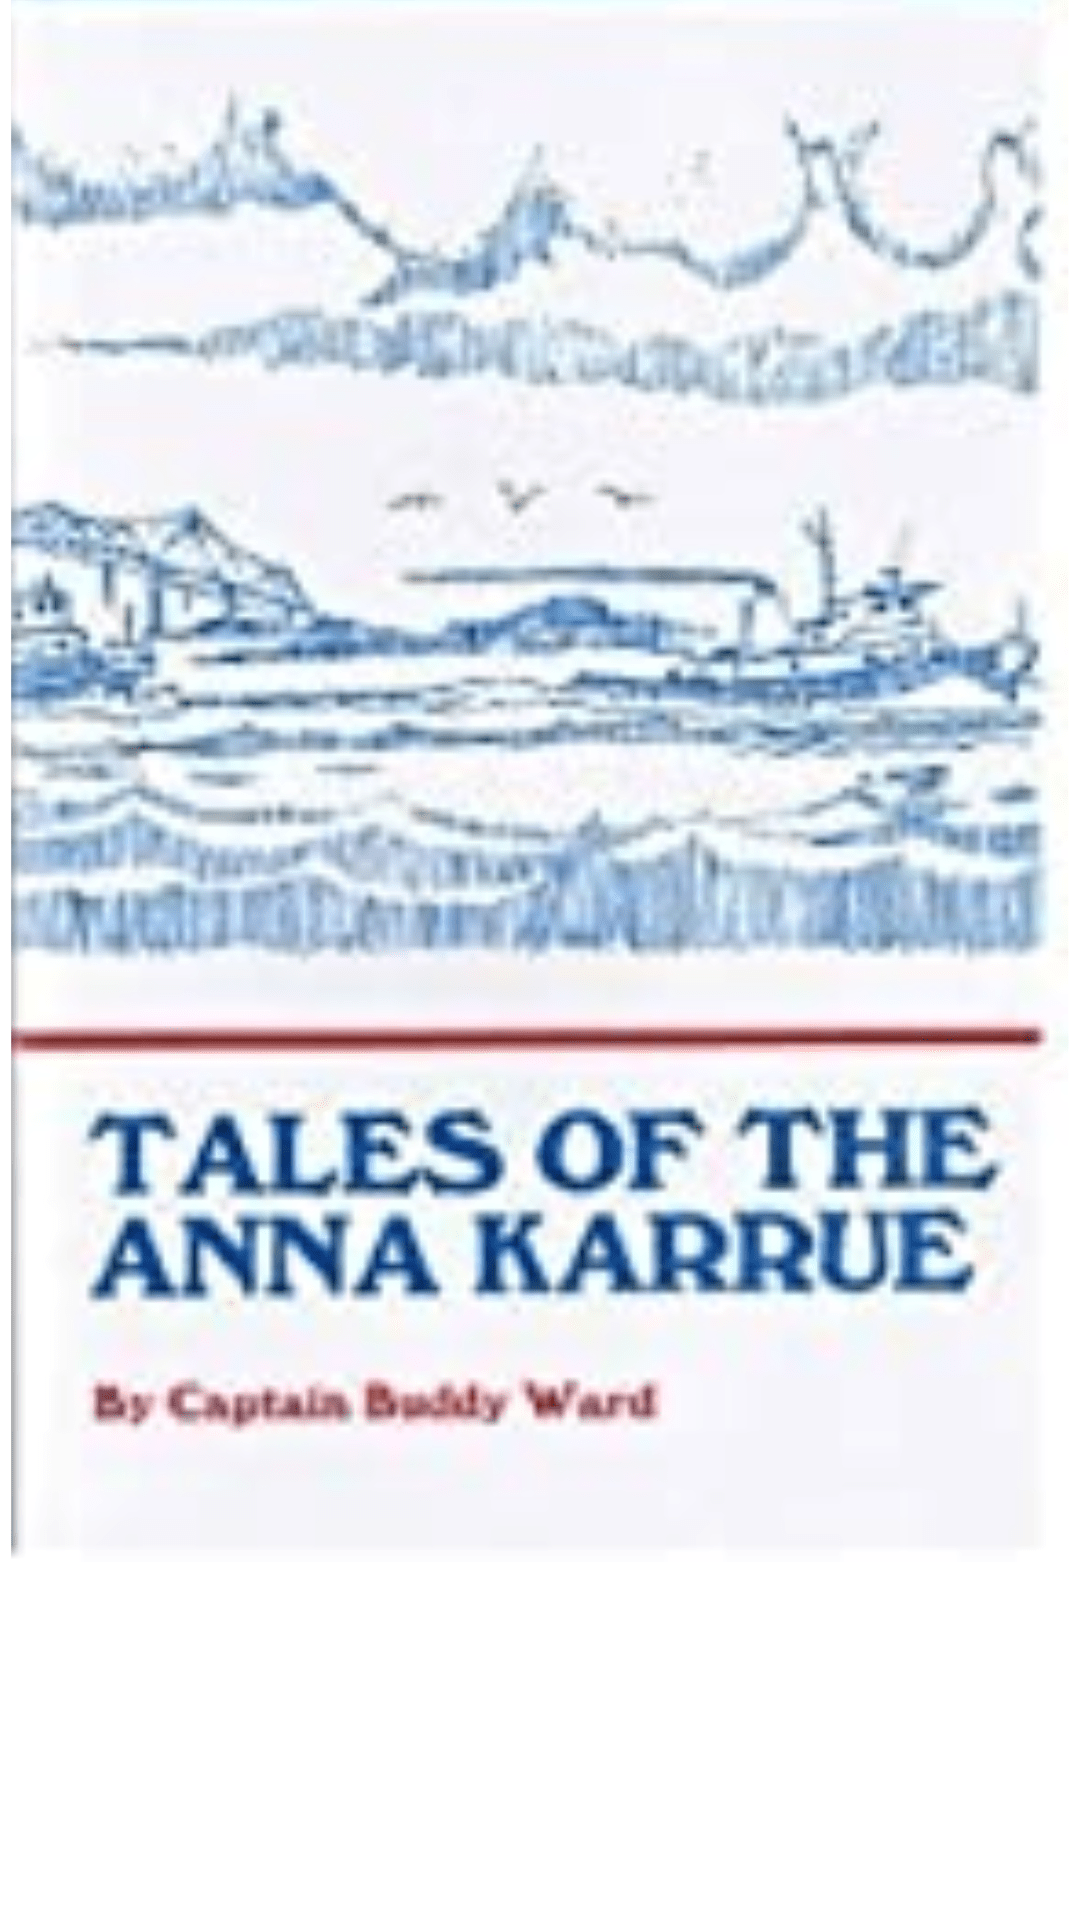 Tales of the Anna Karrue